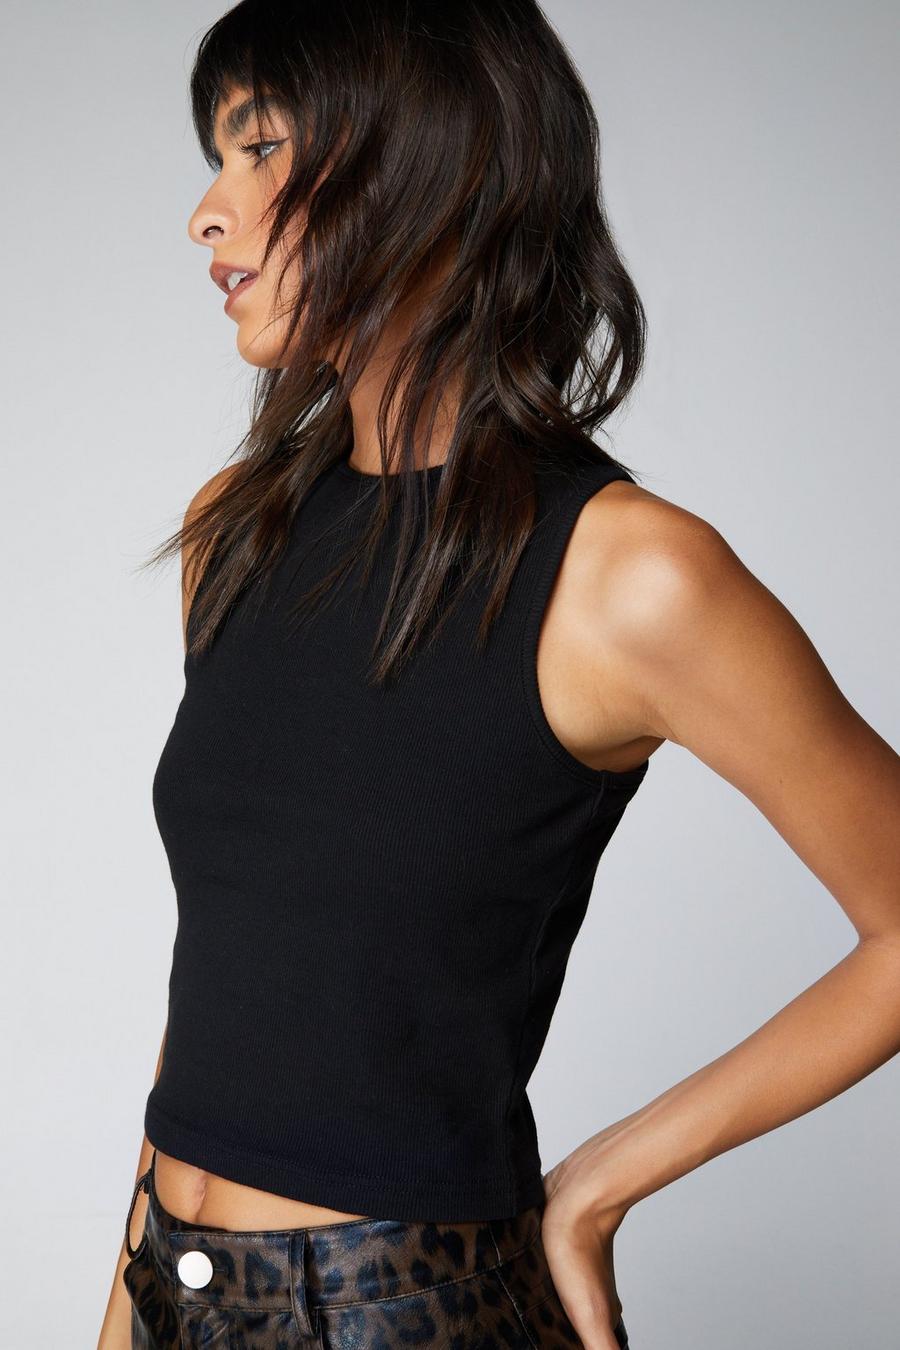 NanoEdge Women Crop Top V Neck Bra Bralette Vest Halter Black Sleeveless  Top Free Size (28 Till 34) Pack of 1